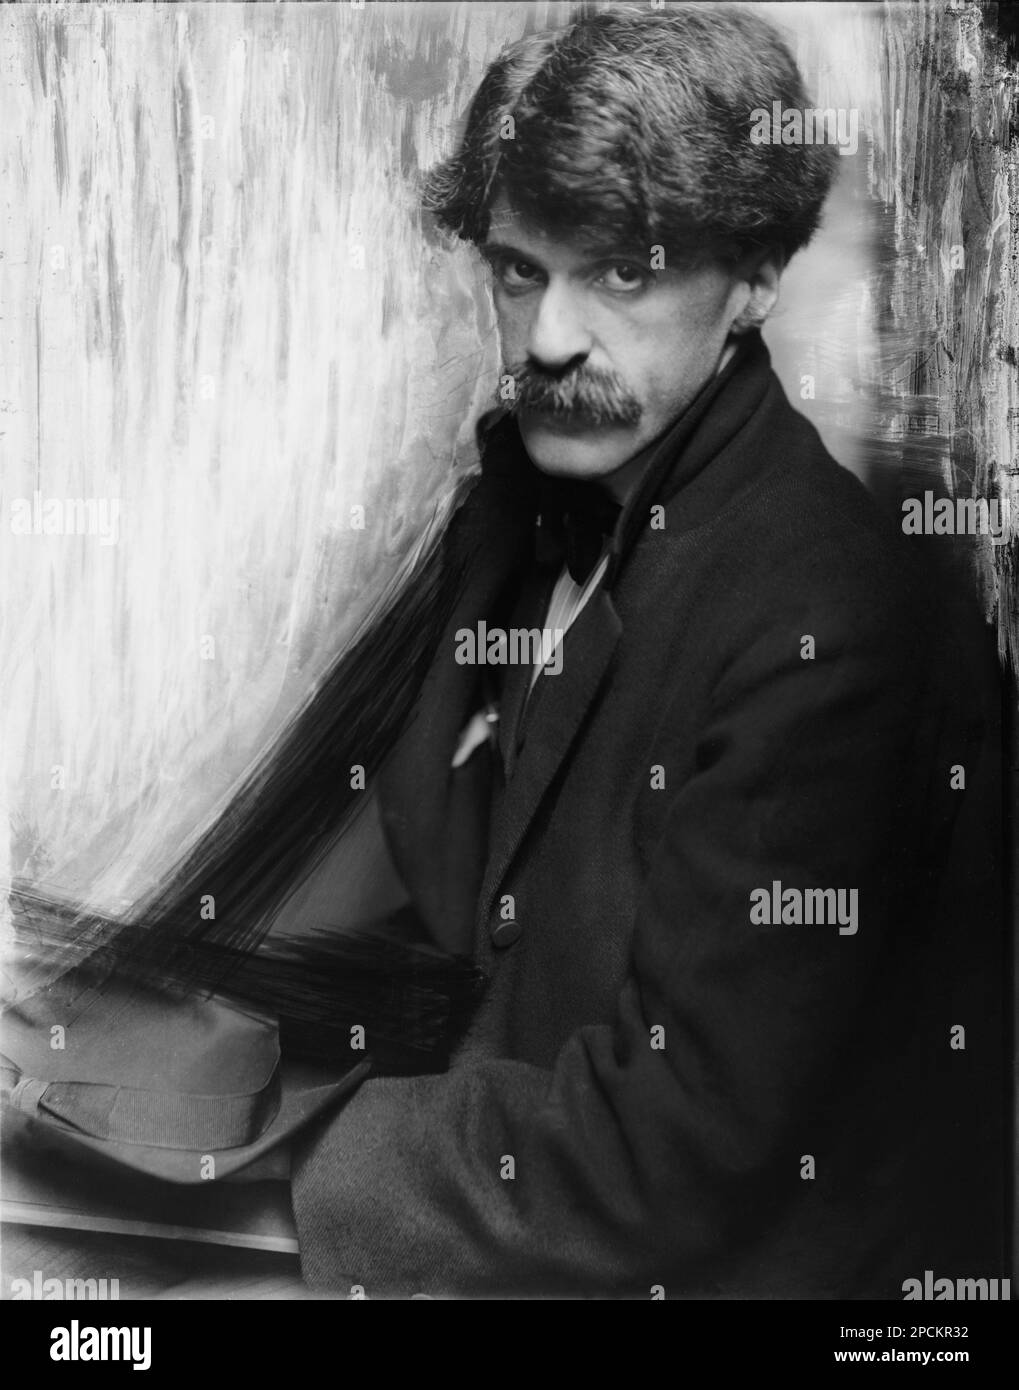 1902 , USA : ALFRED STIEGLITZ ( 1864 - 1946 ). Ritratto fotografico di GERTRUDE KASEBIER ( 1852 - 1934 ). Stieglitz era un fotografo americano e un promotore di arte moderna che è stato strumentale durante la sua carriera cinquantennale nel rendere la fotografia una forma d'arte accettata. Oltre alla sua fotografia, Stieglitz è conosciuta per le gallerie d'arte di New York che ha gestito all'inizio del 20th ° secolo, dove ha introdotto molti artisti europei d'avanguardia negli Stati Uniti Sposò il pittore Georgia o'Keeffe - RITRATTO - ritratto - baffi - baffi - ARTE - ARTI VISIVE - ARTI VISIVE - B. Foto Stock